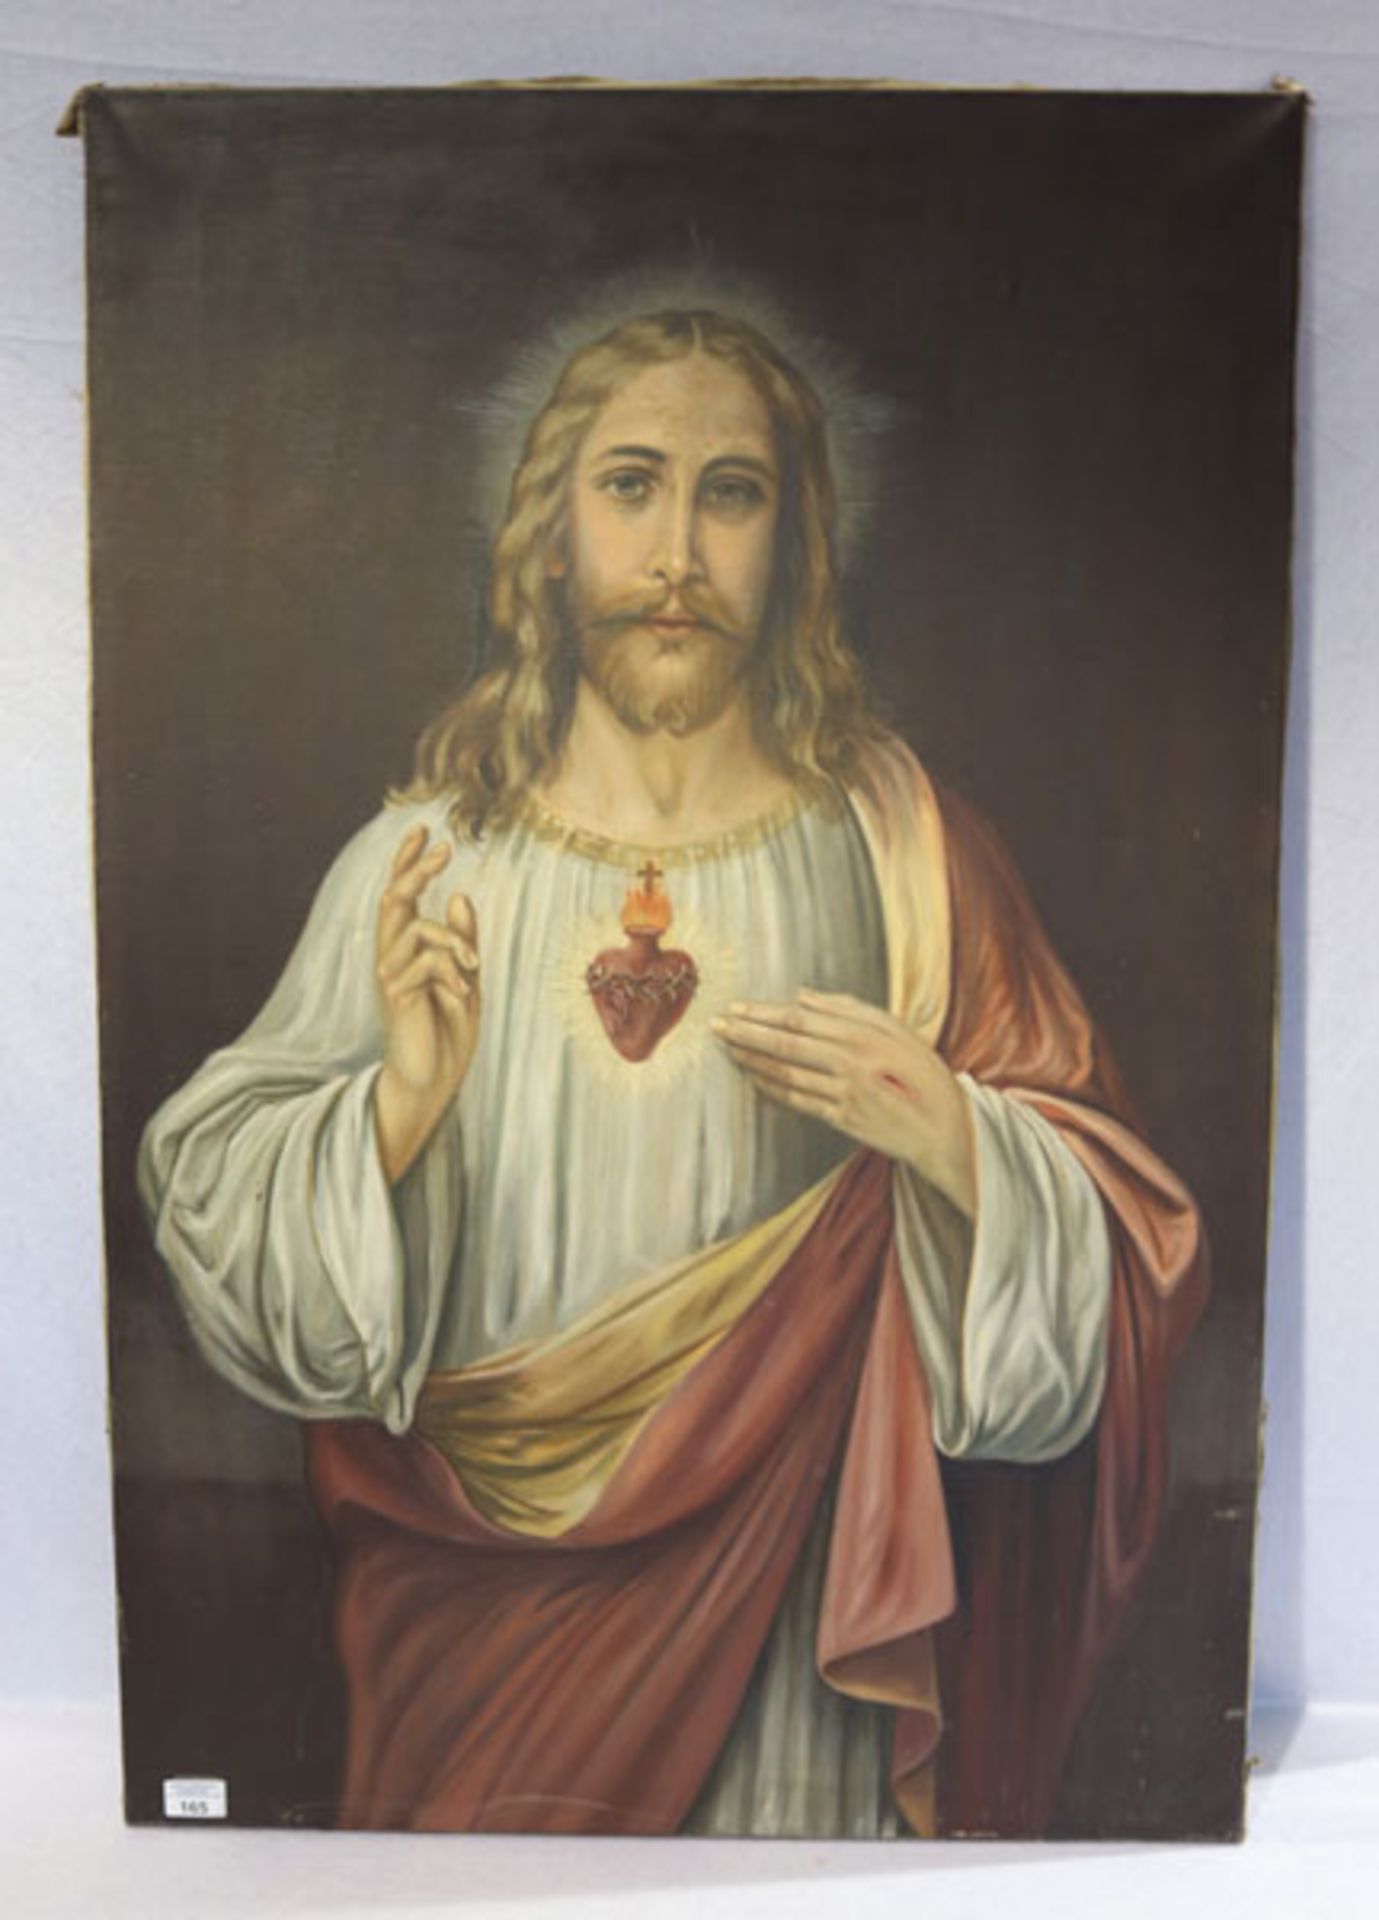 Gemälde ÖL/LW 'Herz-Jesus', rechts unten signiert FS Canissia ?, datiert 1918, rückseitig